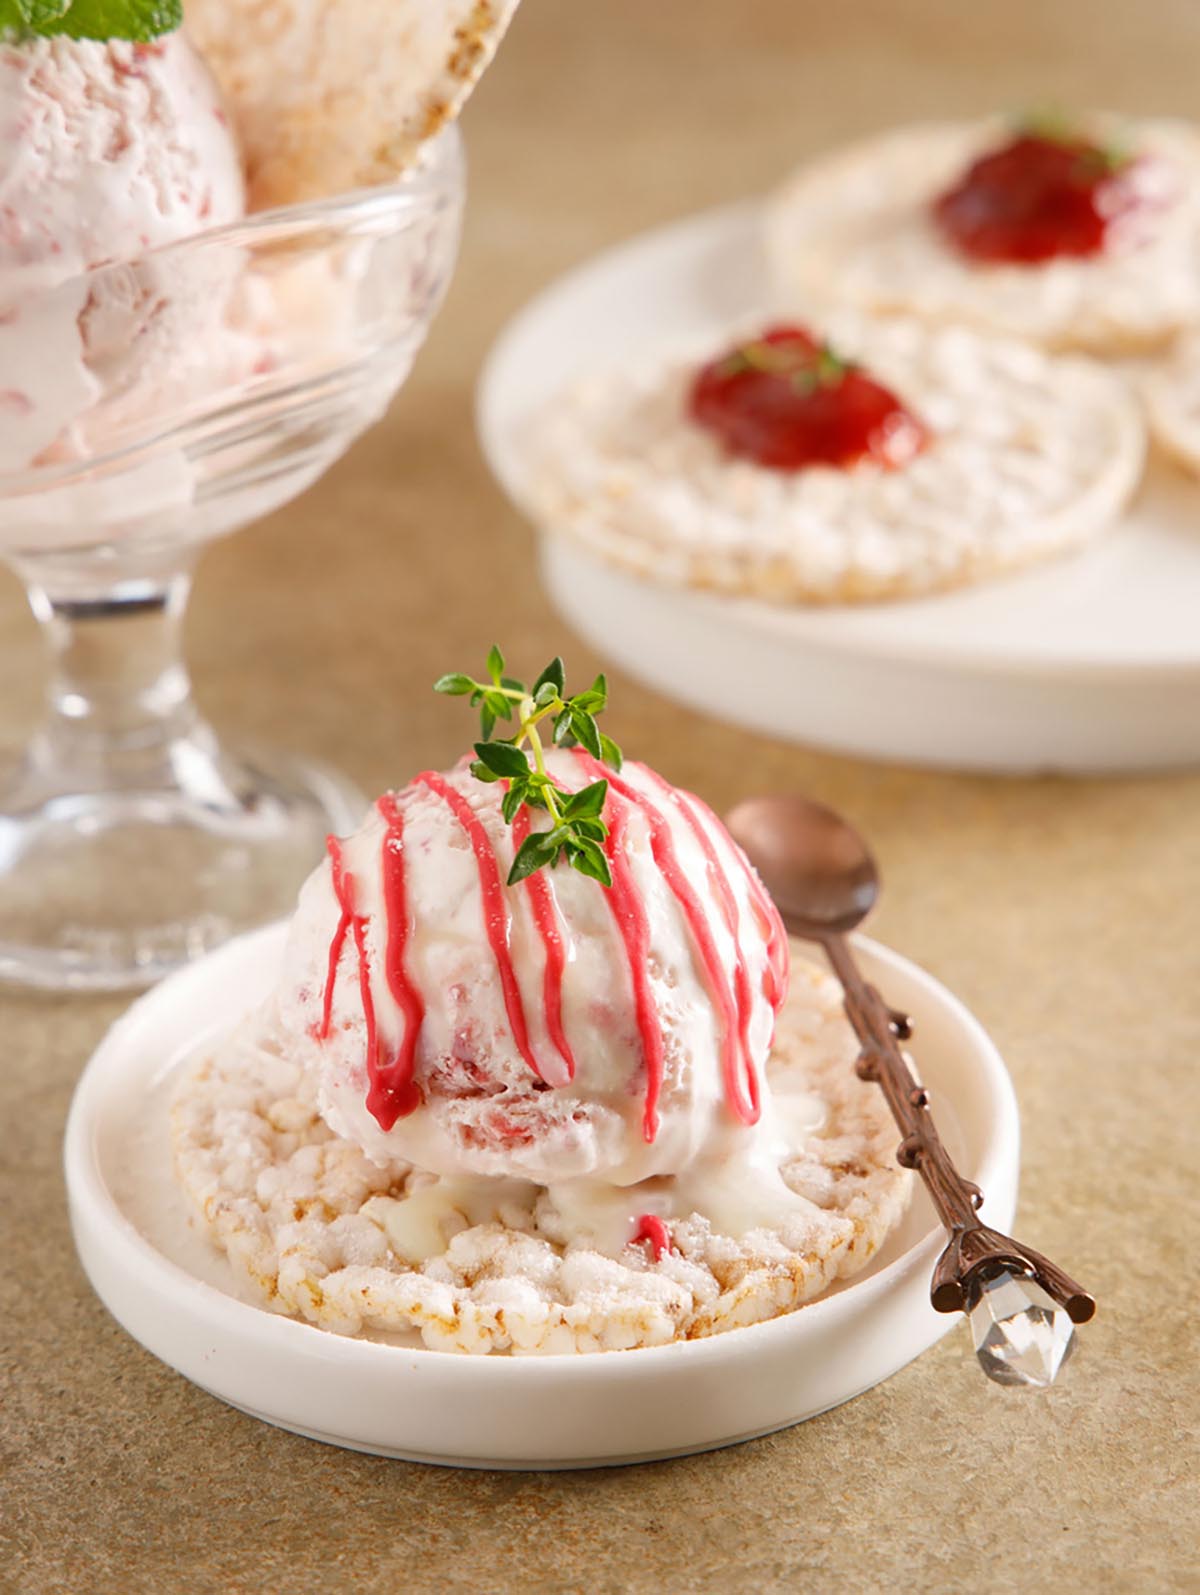  하얀 접시에 현미과자 한개가 있고, 그 위에 아이스크림 한스푼이 올려져 있다.아이스크림 위에 새싹잎으로 장식을 더하고 수저가 있다.